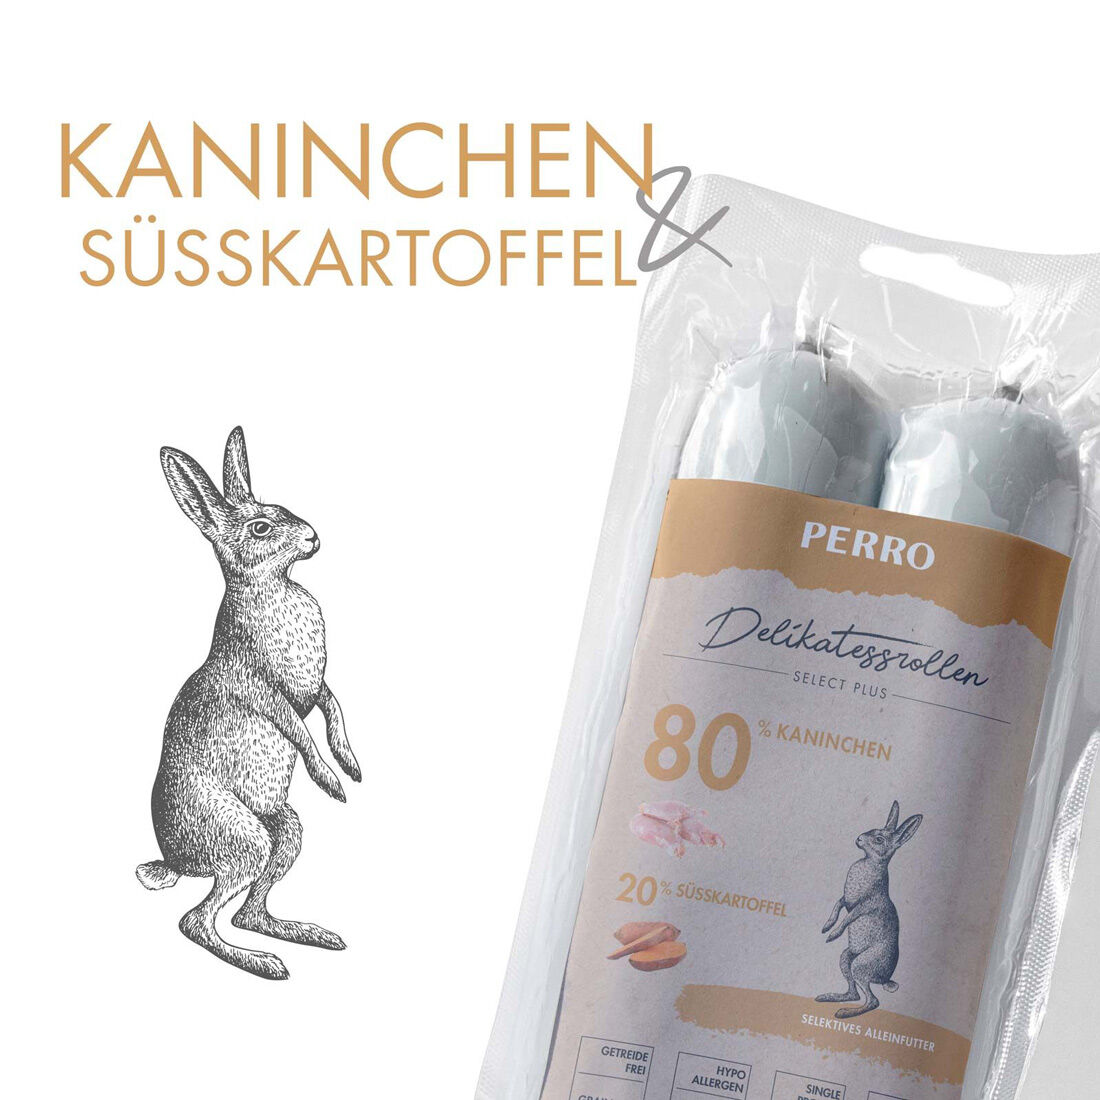 PERRO-Delikatessrolle-Kaninchen-Suesskartoffel-Fleischwurst-fuer-Hunde-181582